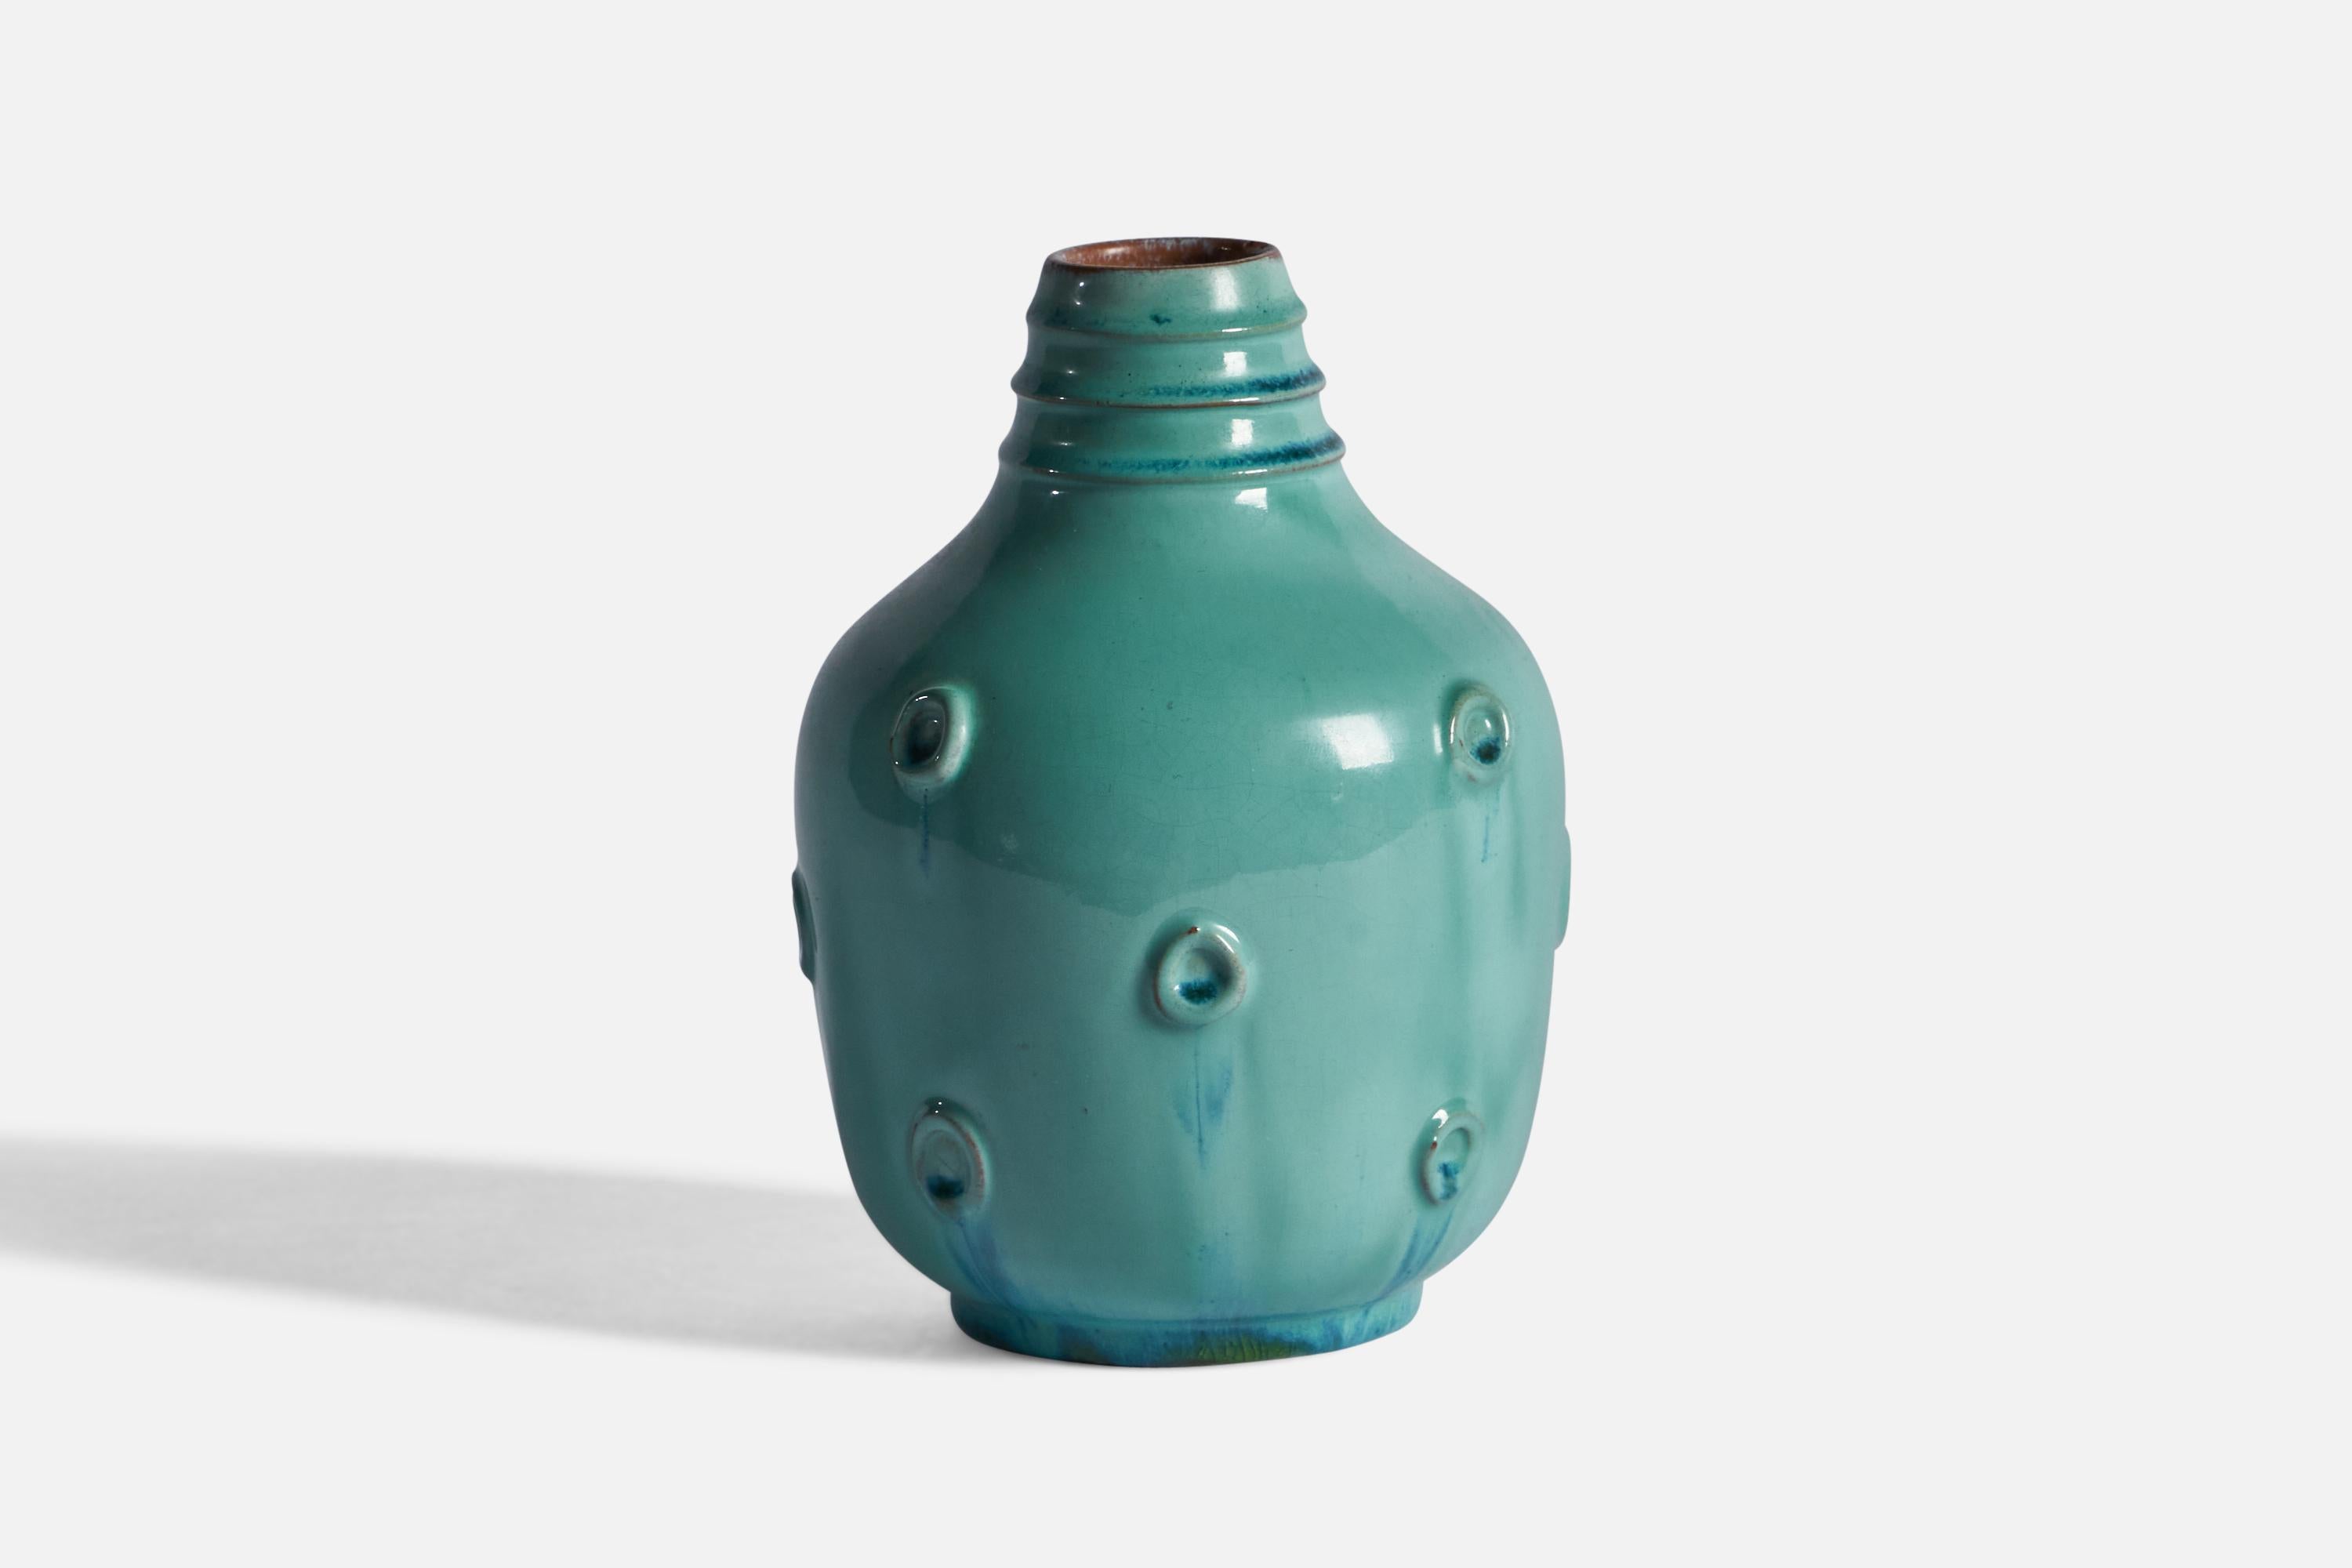 A green-glazed earthenware vase, designed by Jerk Werkmäster and produced by Nittsjö, Sweden, c. 1940s.